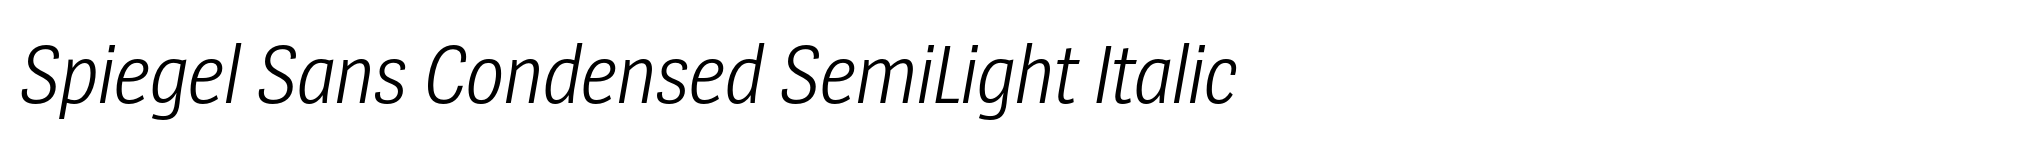 Spiegel Sans Condensed SemiLight Italic image